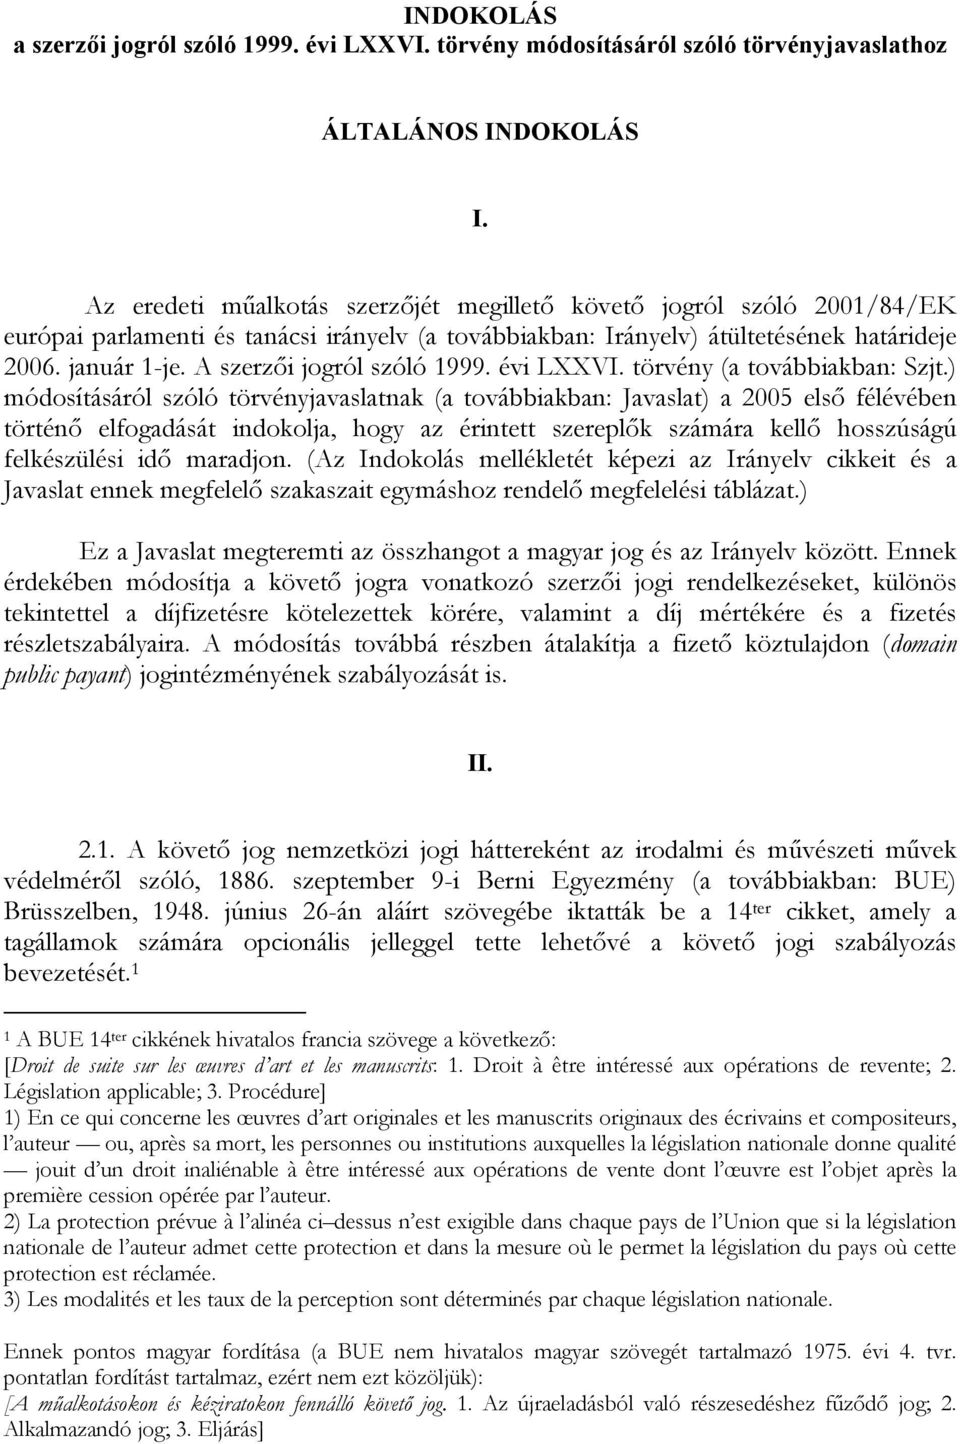 A szerzői jogról szóló 1999. évi LXXVI. törvény (a továbbiakban: Szjt.